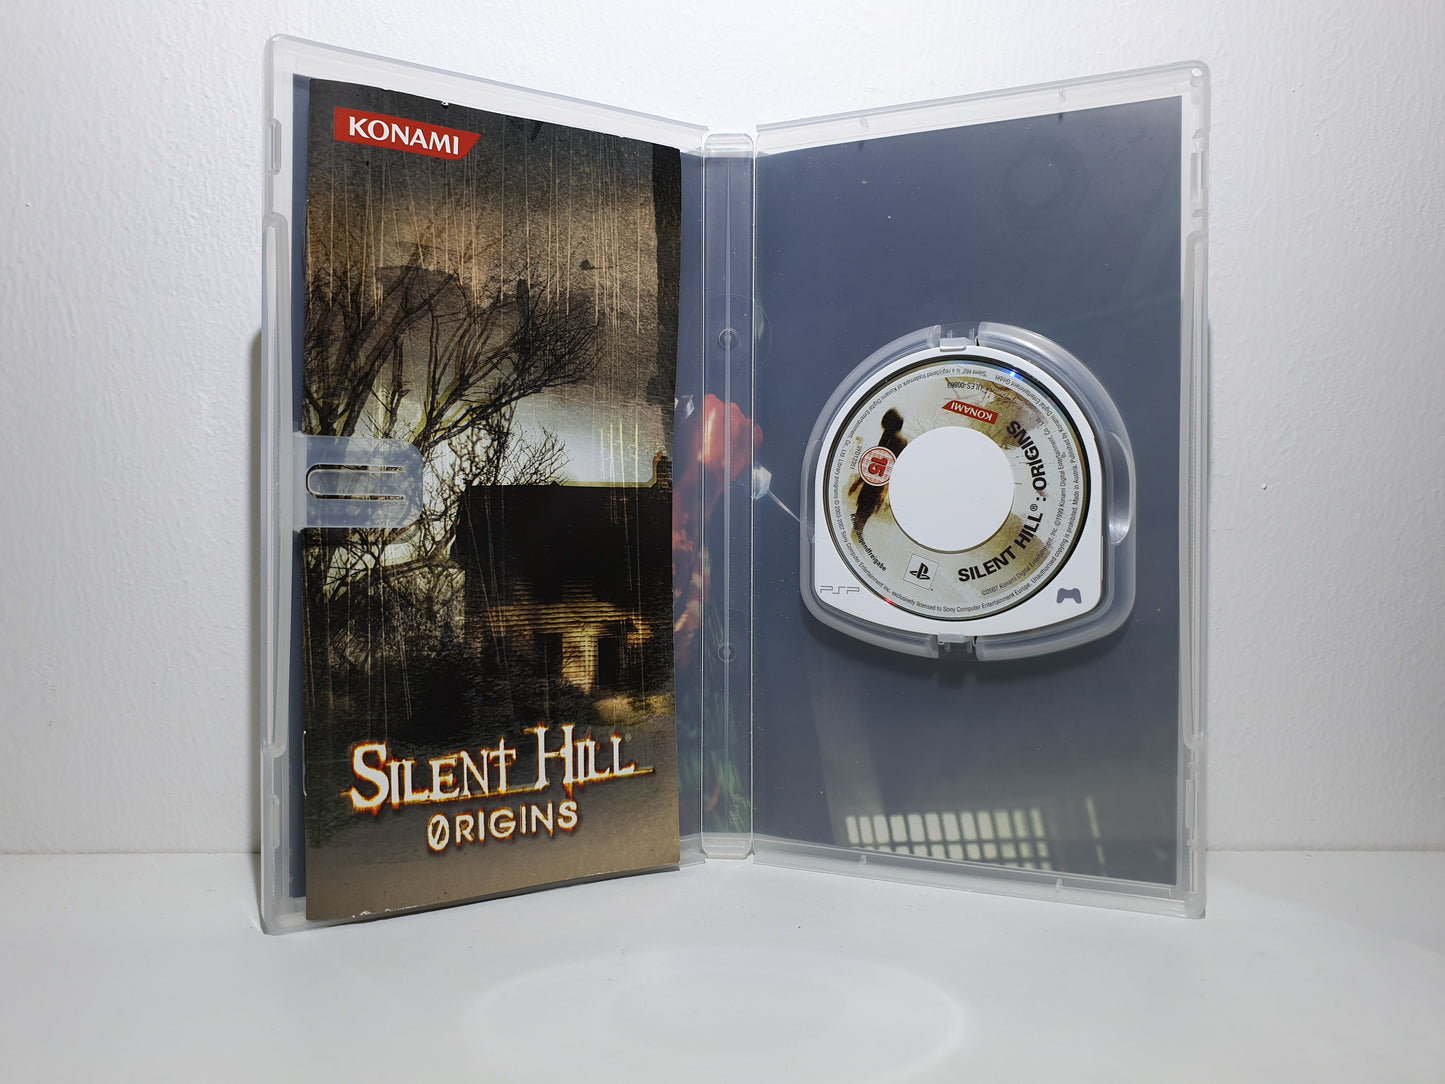 Silent Hill Origins PSP - Occasion excellent état